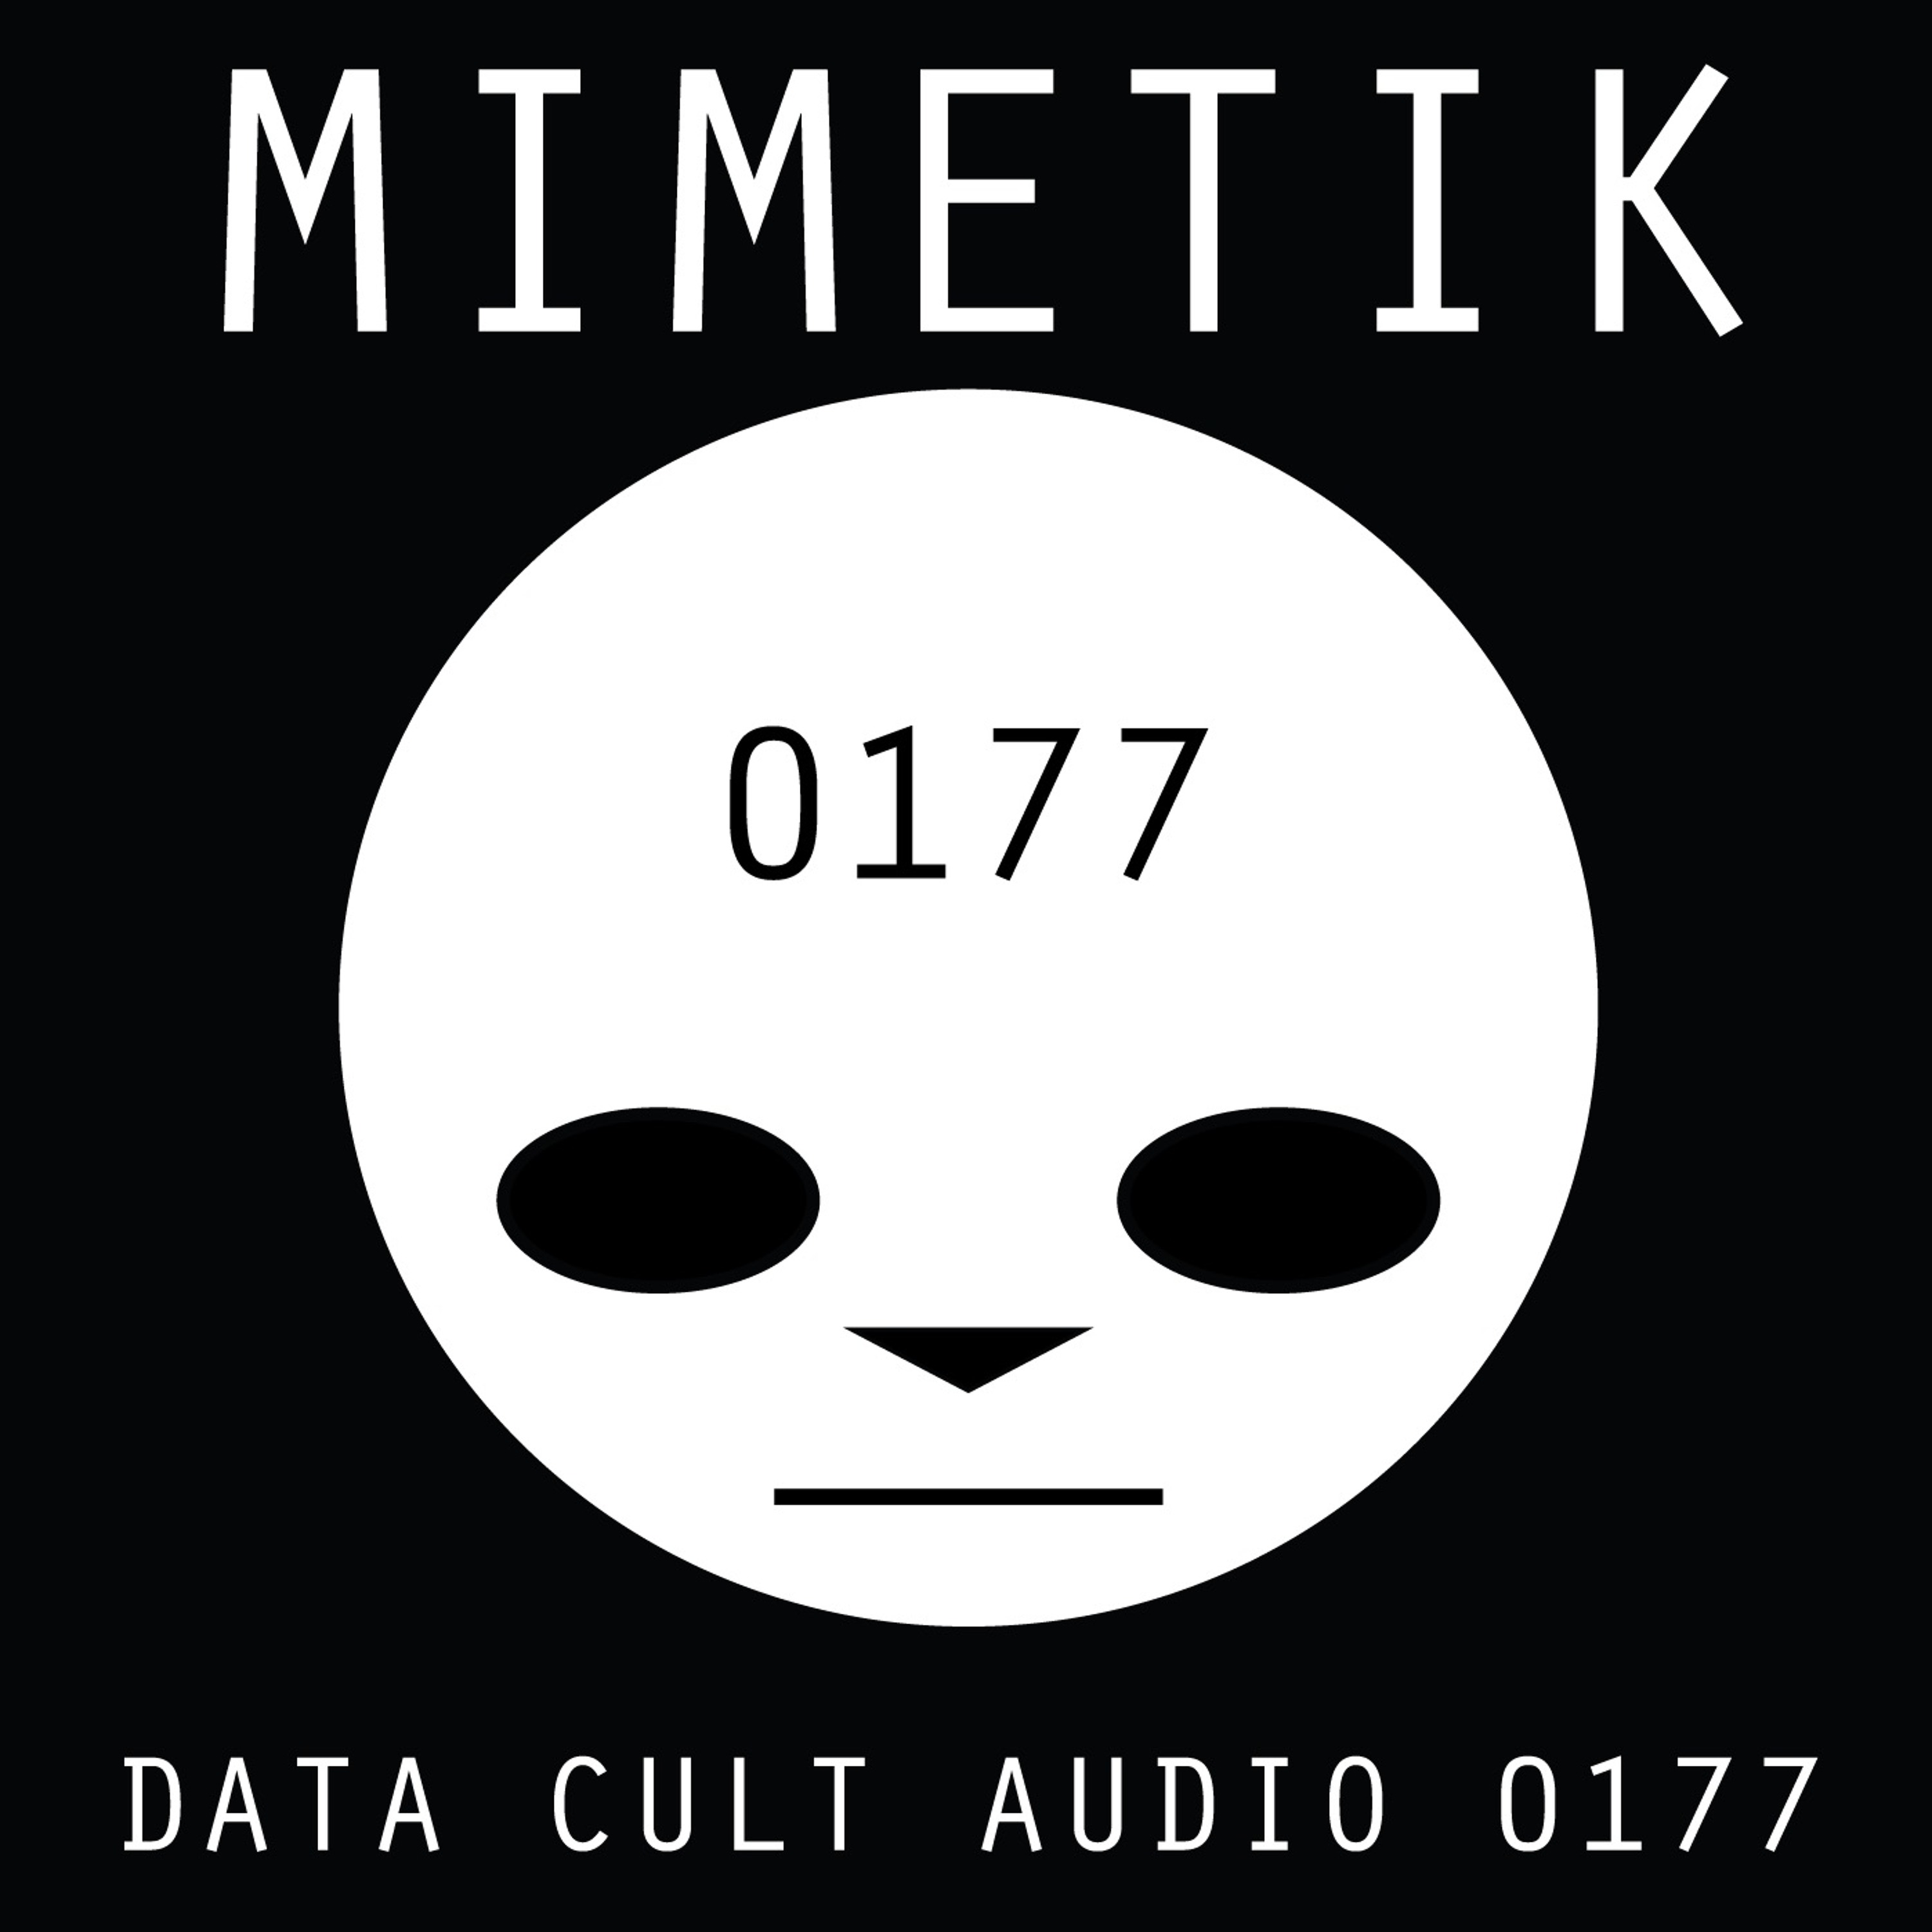 Data Cult Audio 0177 - Mimetik